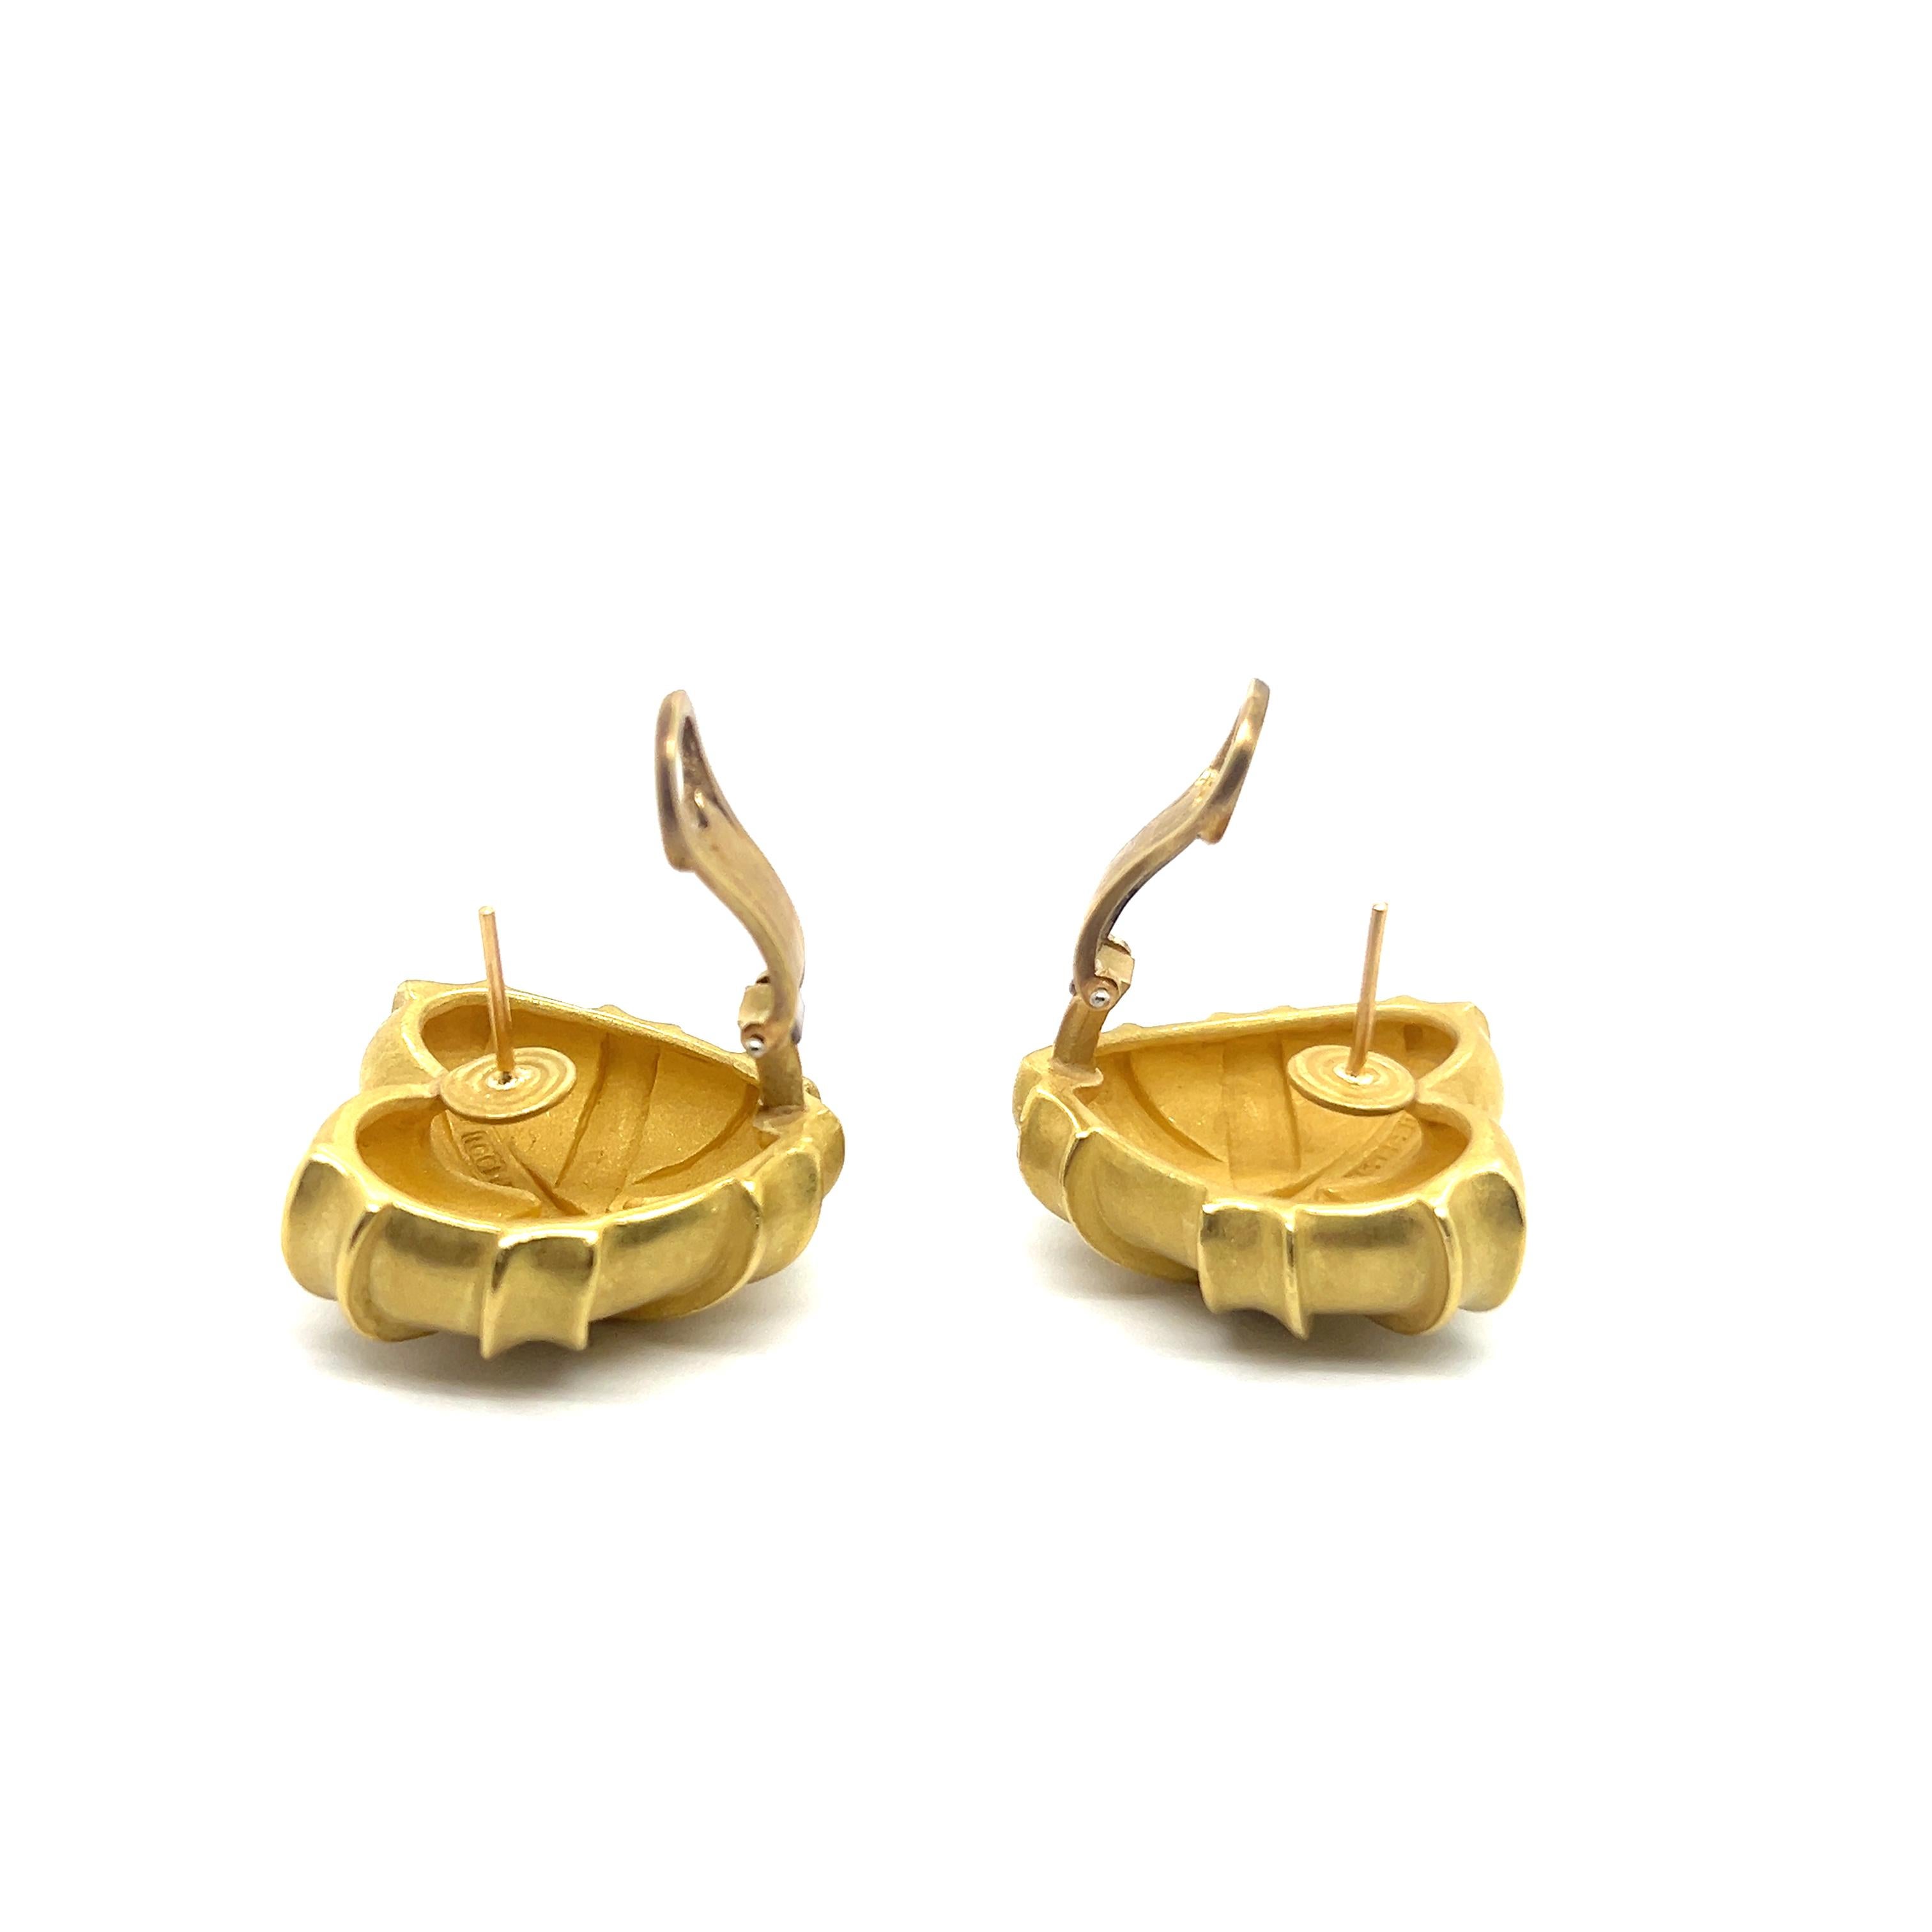 Heart-shaped Earrings in 18 Karat Yellow Gold by Kieselstein-Cord For Sale 12